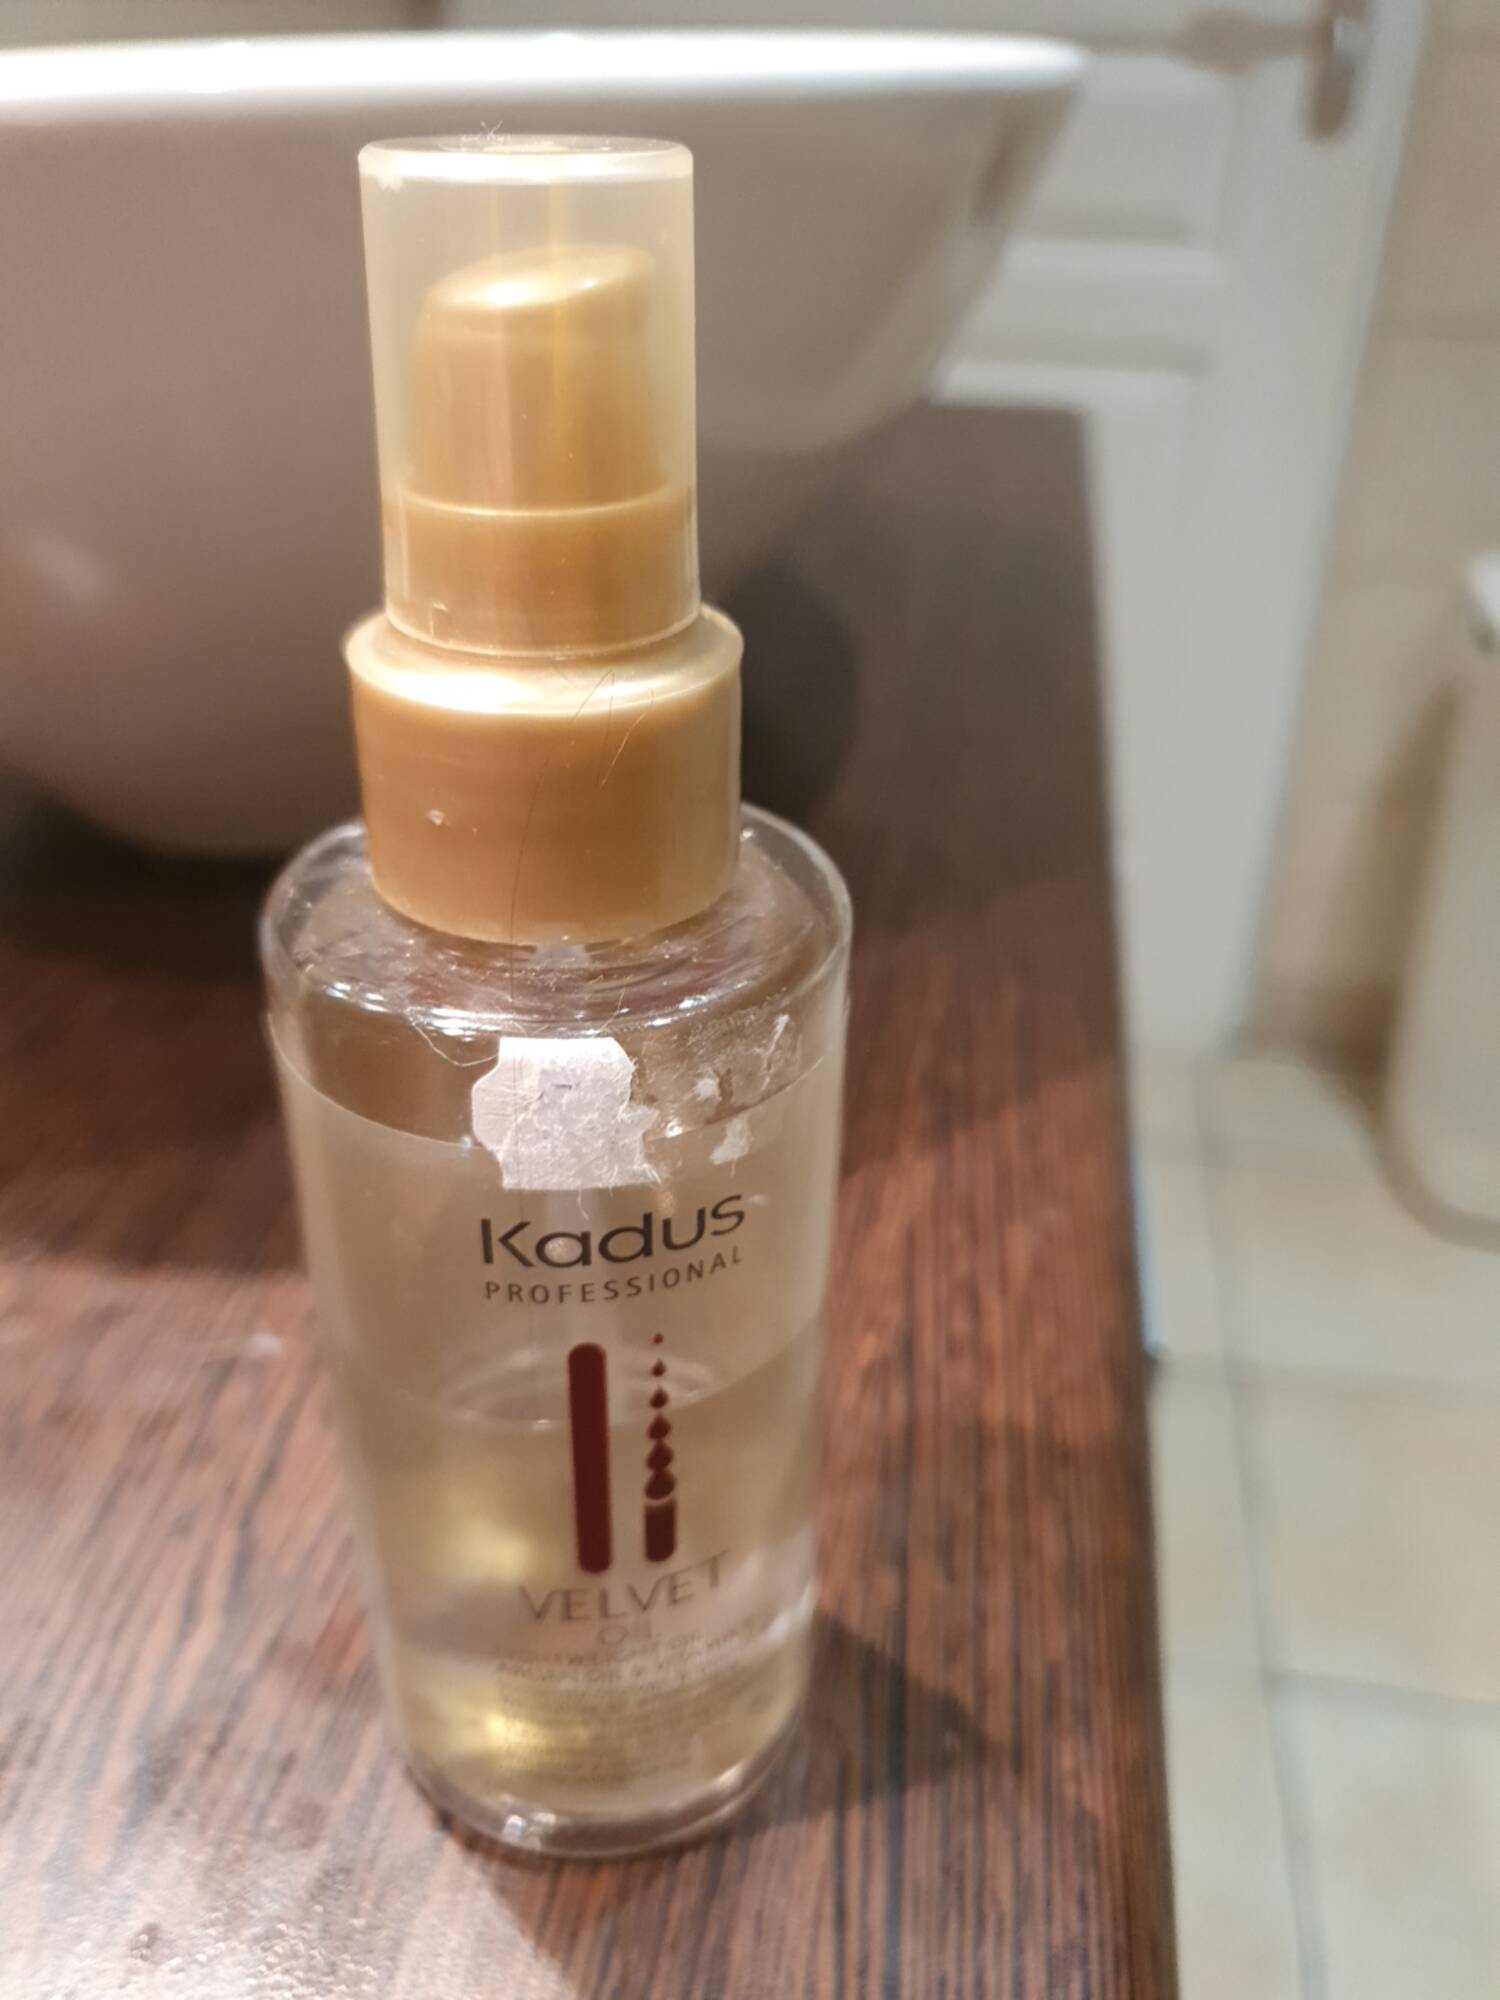 KADUS - Velvet oil